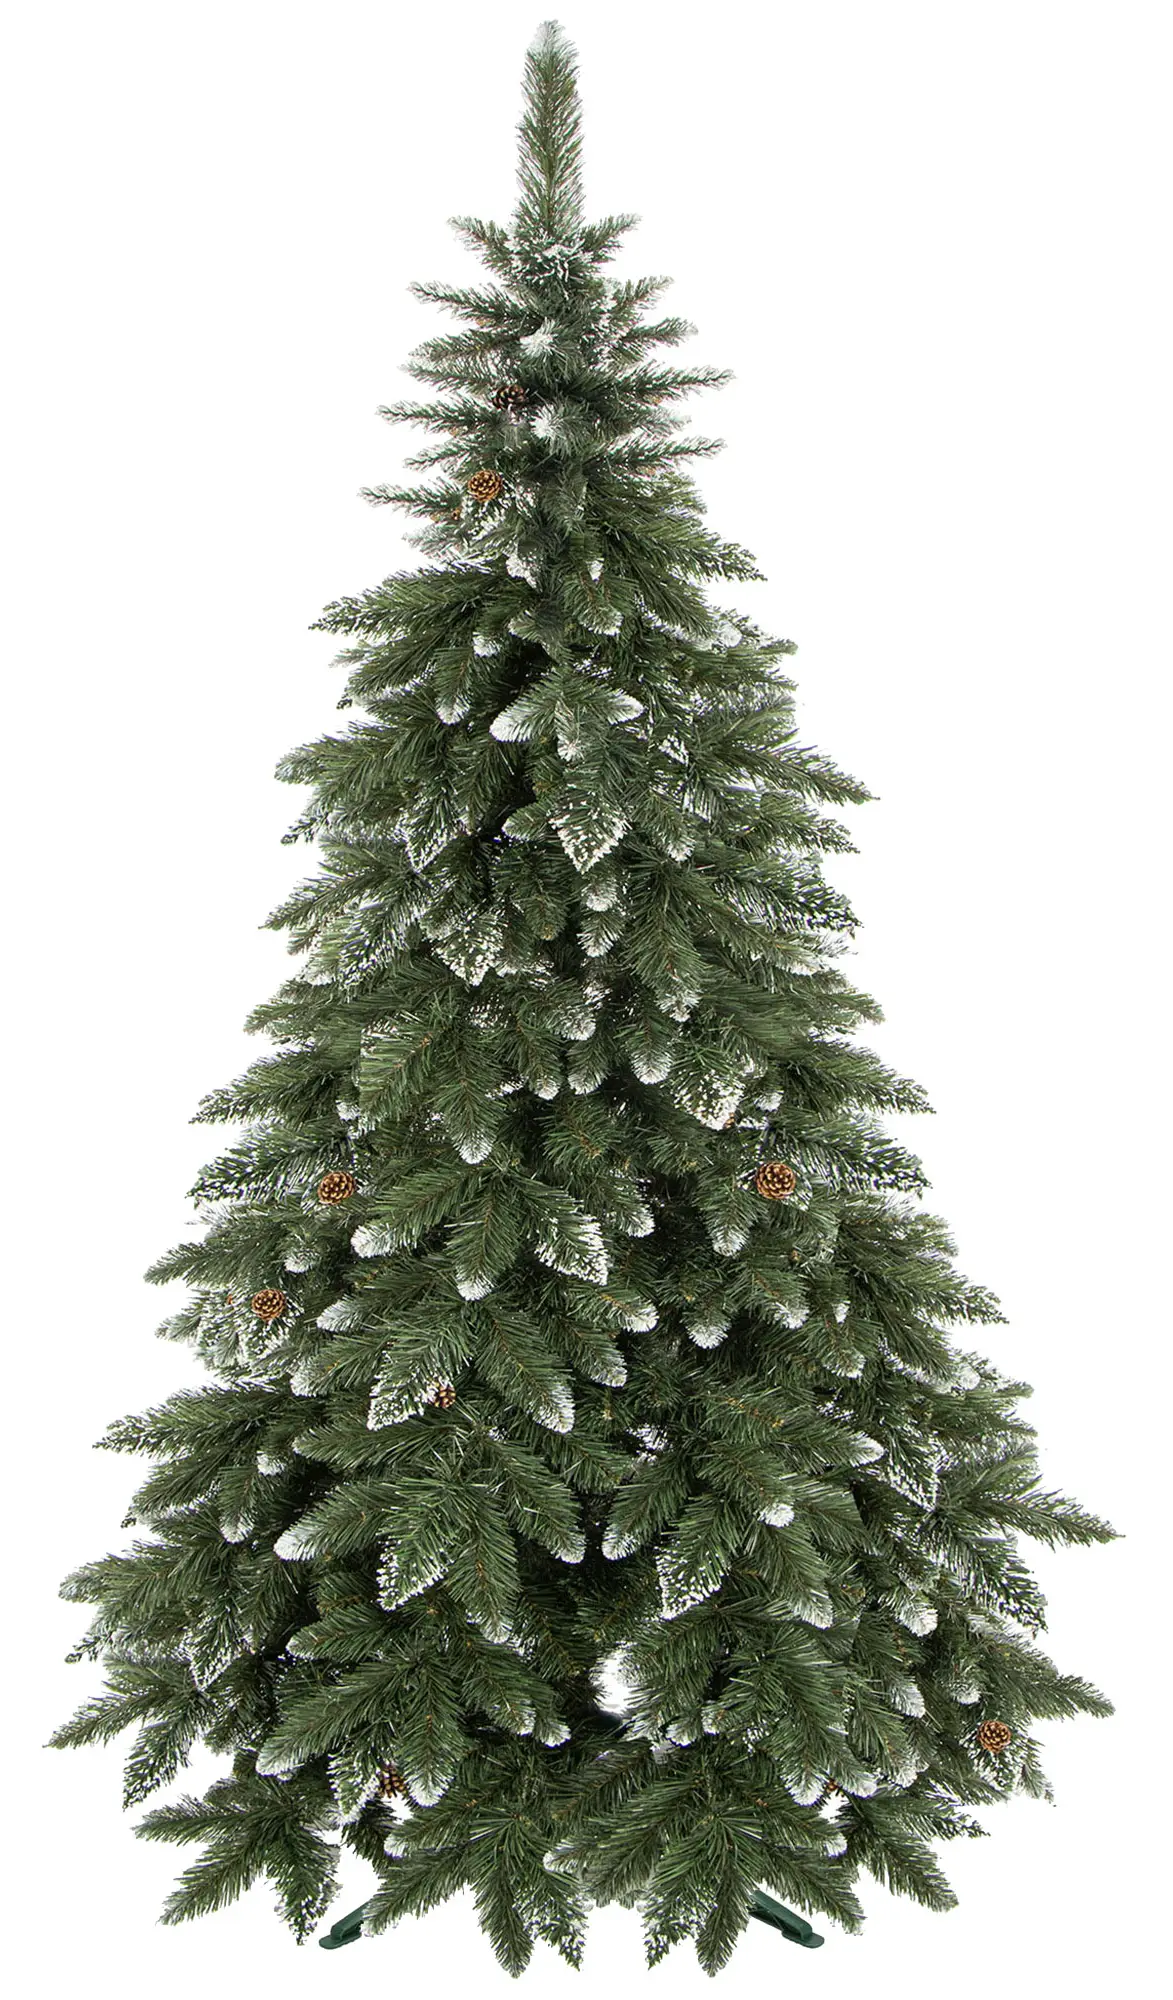 Weihnachtsbaum 220 K眉nstlicher cm